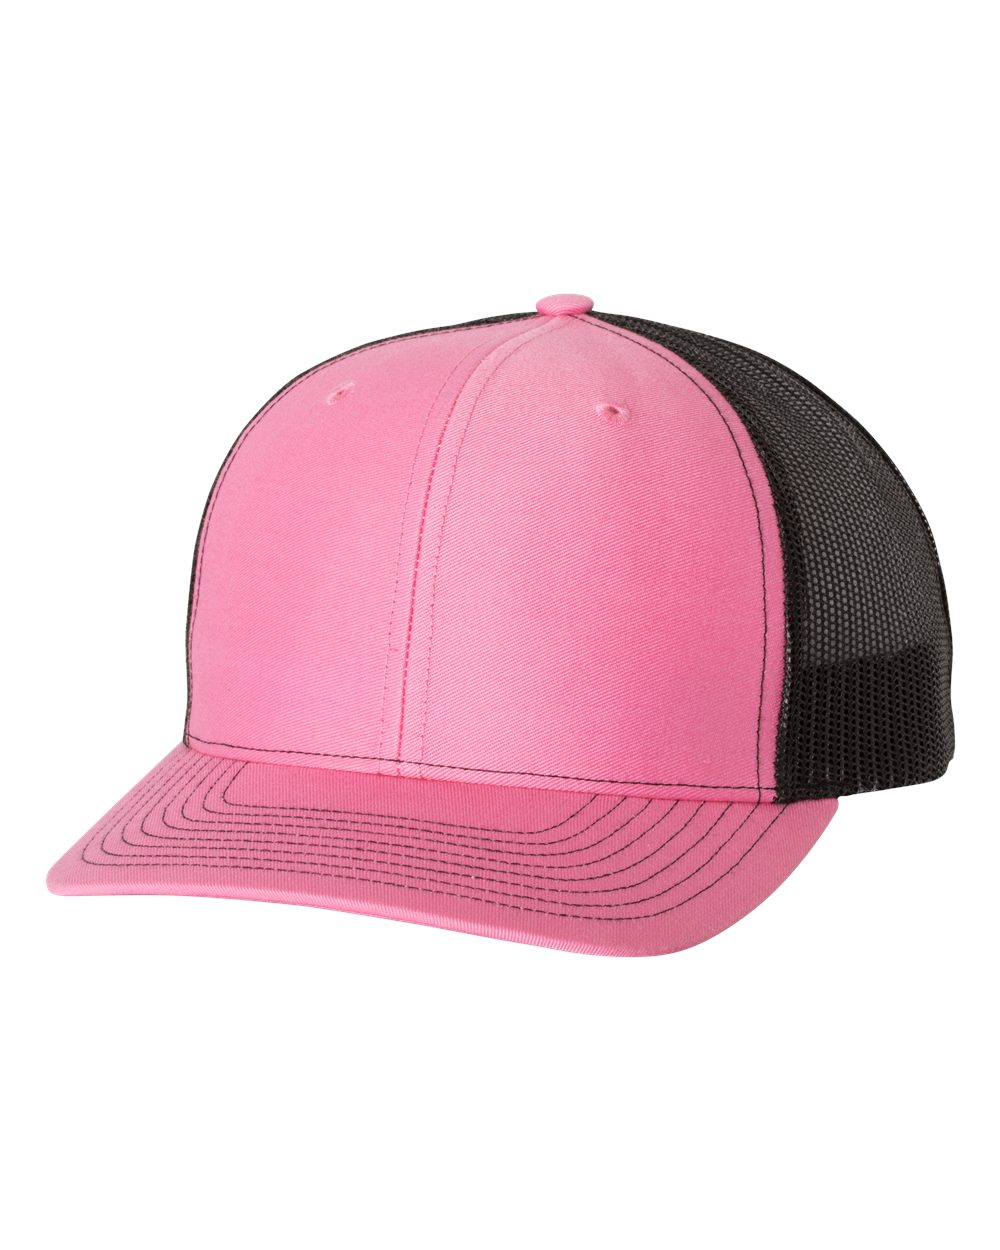 richardson cap hot pink black